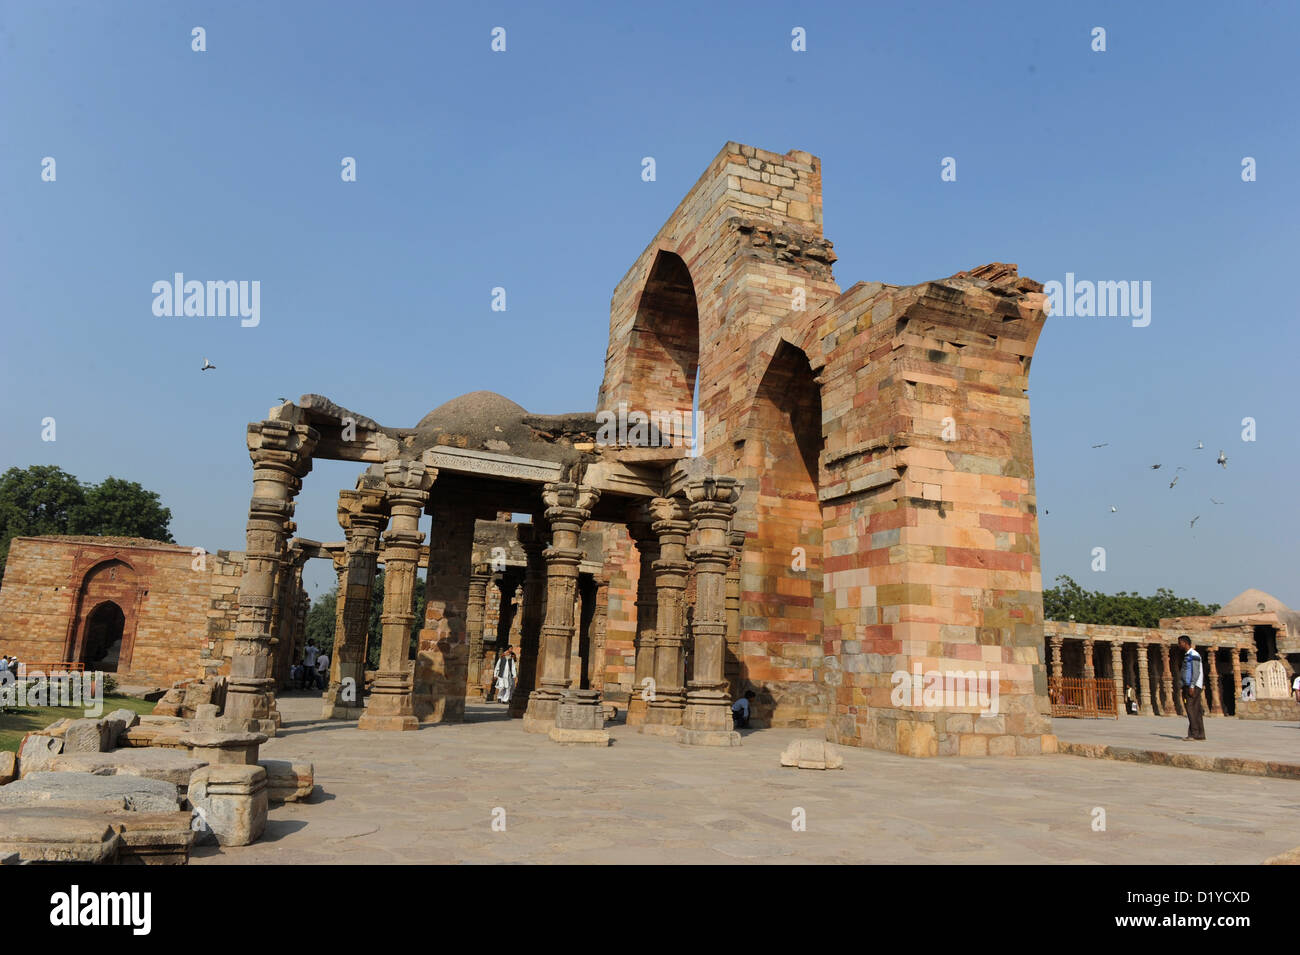 Blick auf den Säulenhallen auf dem Gelände der Qutb-Komplex in Delhi, Indien, 23. November 2012. Da die Spalten nicht lang genug waren, waren sie übereinander gestapelt. In der Umgebung befinden sich die Ruinen der ältesten Hof Moschee in Indien, die Quwwat-Ul-Islam (könnte der Islam), die auf den Ruinen der zerstörten Hindu-Tempel gebaut wurde. Foto: Jens Kalaene Stockfoto